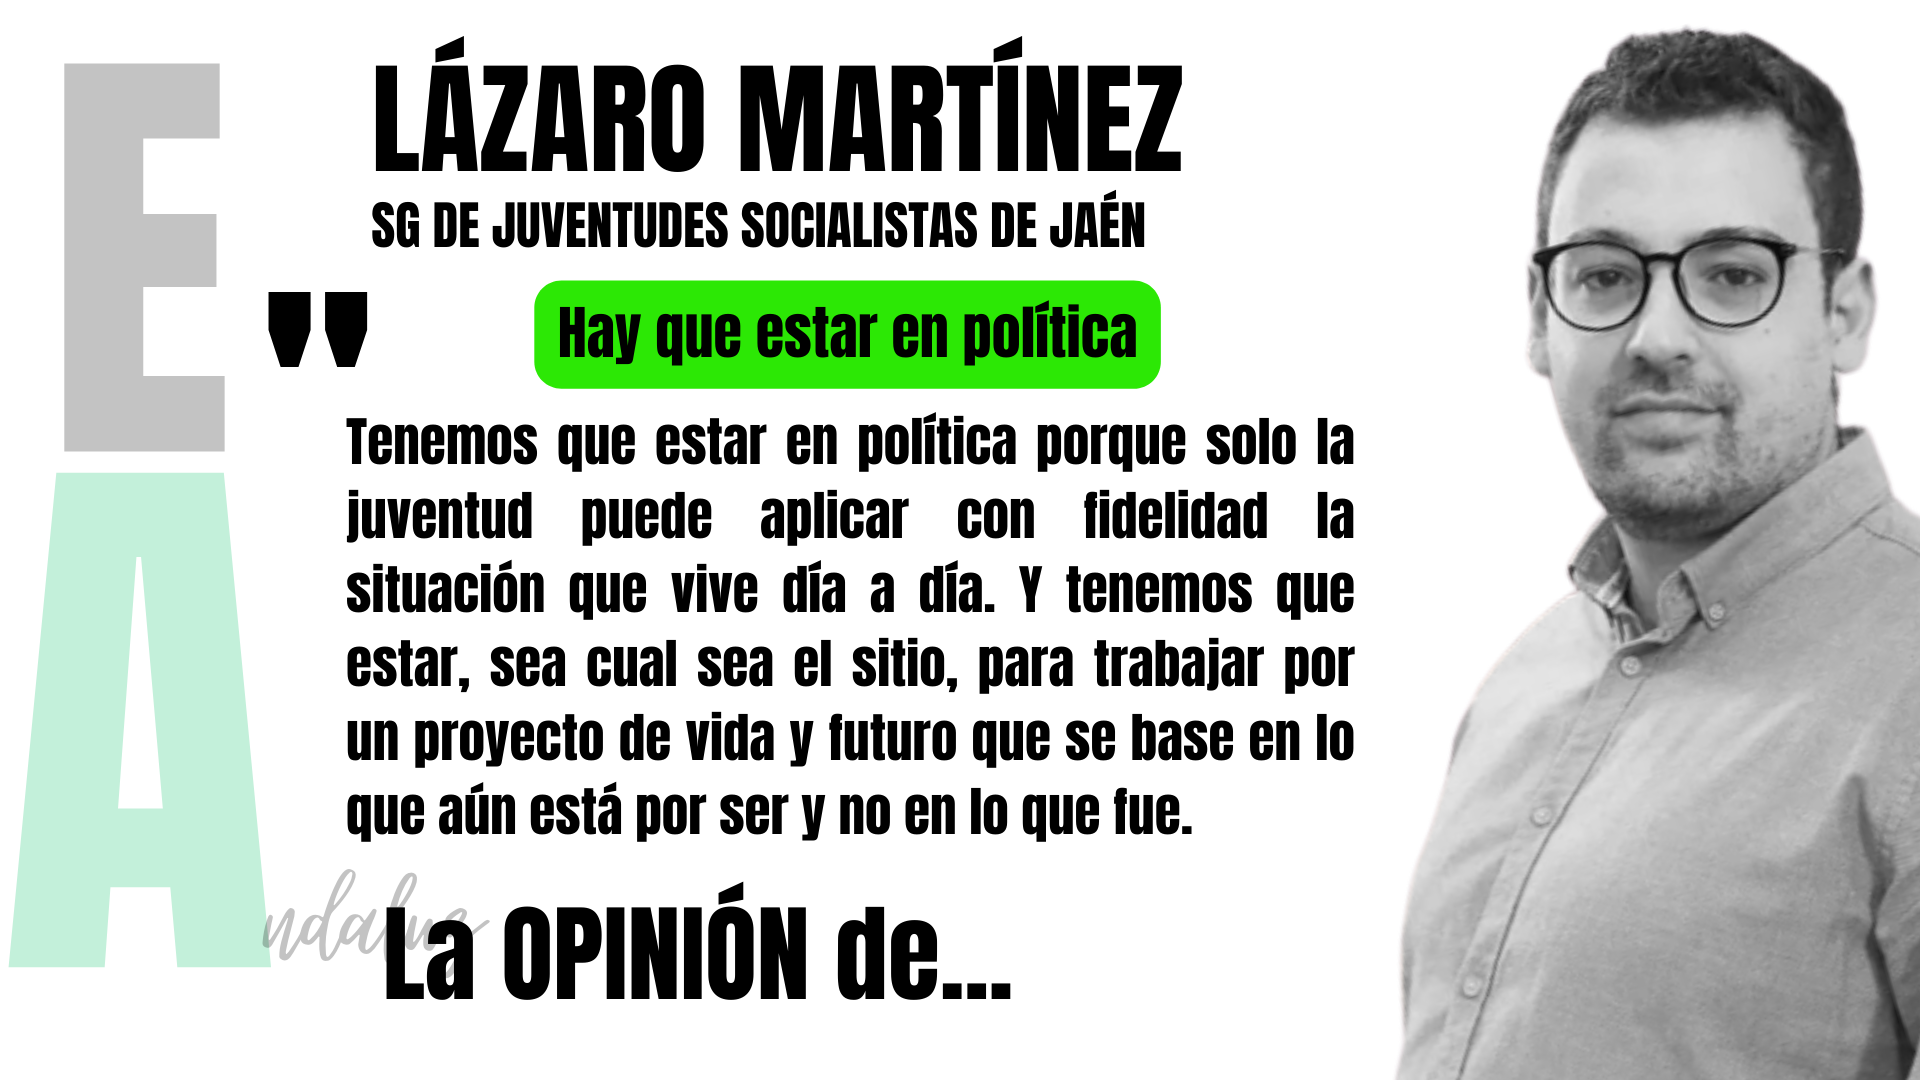 Artículo de Lázaro Martínez, secretario general de Juventudes Socialistas de Jaén: "Hay que estar en política".